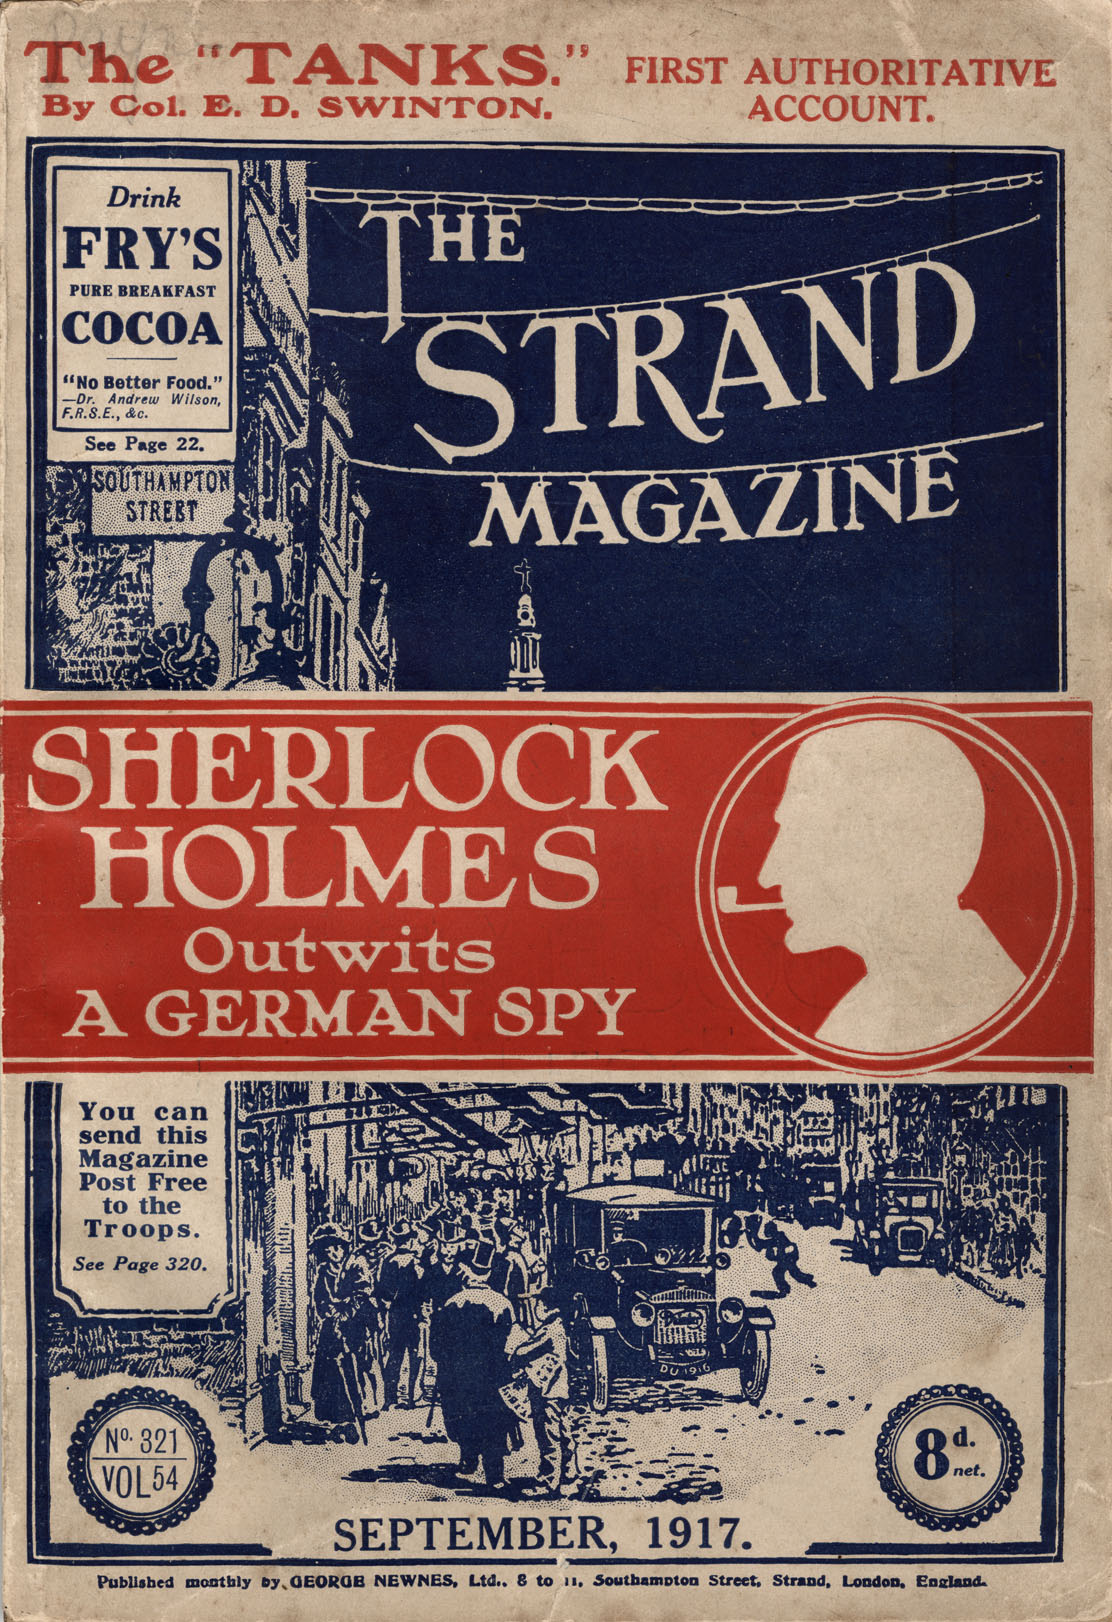 File:The Strand Magazine (cover), vol. 65, no. 321, September 1917 